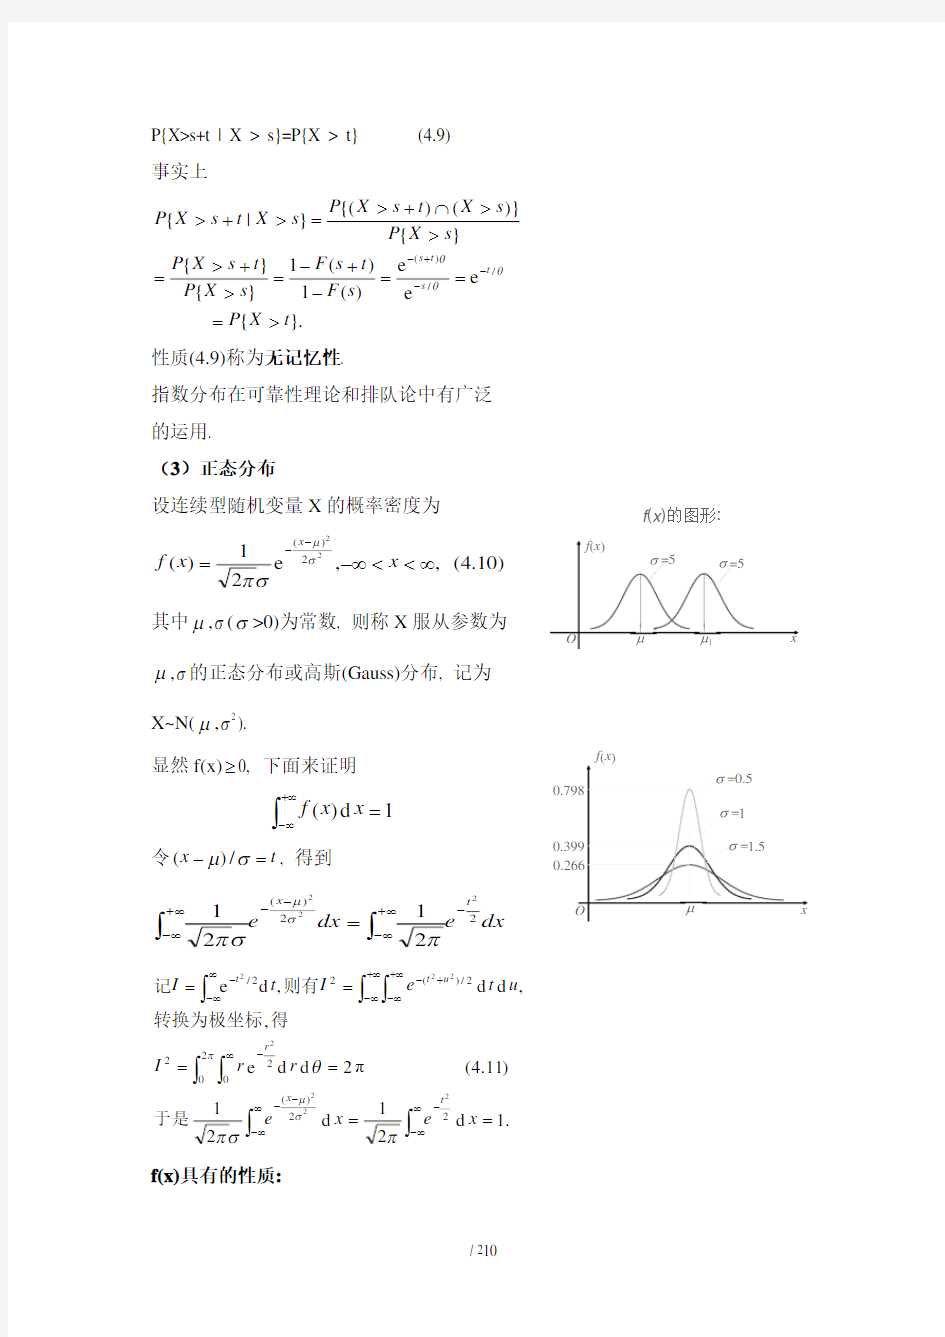 讲连续型随机变量分布及随机变量的函数的分布(2020年10月整理).pdf